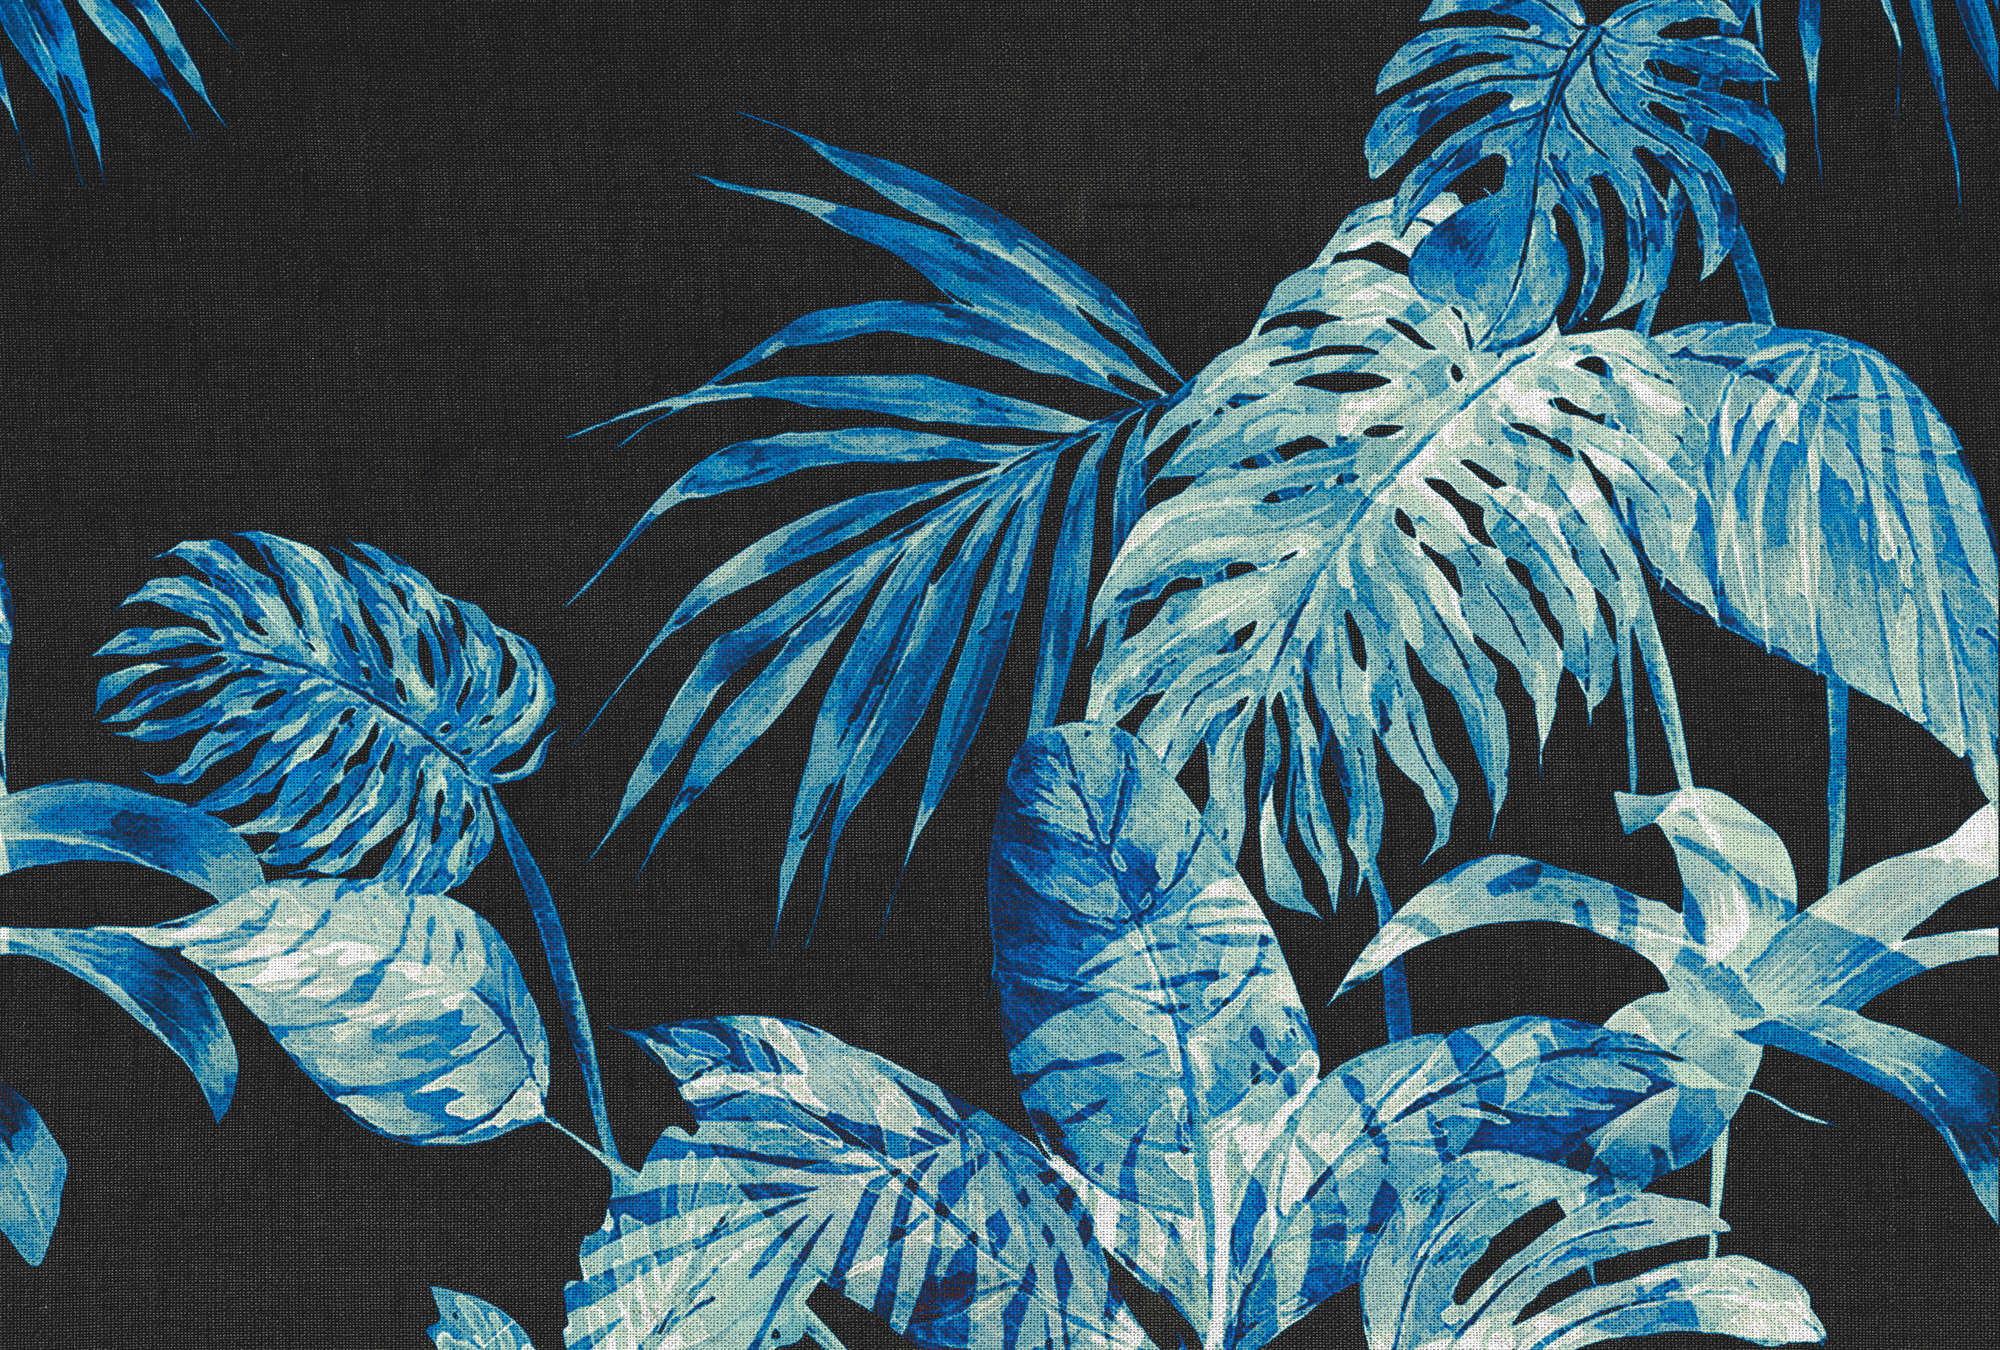             Papier peint feuilles style aquarelle & fond noir - bleu, noir, blanc
        